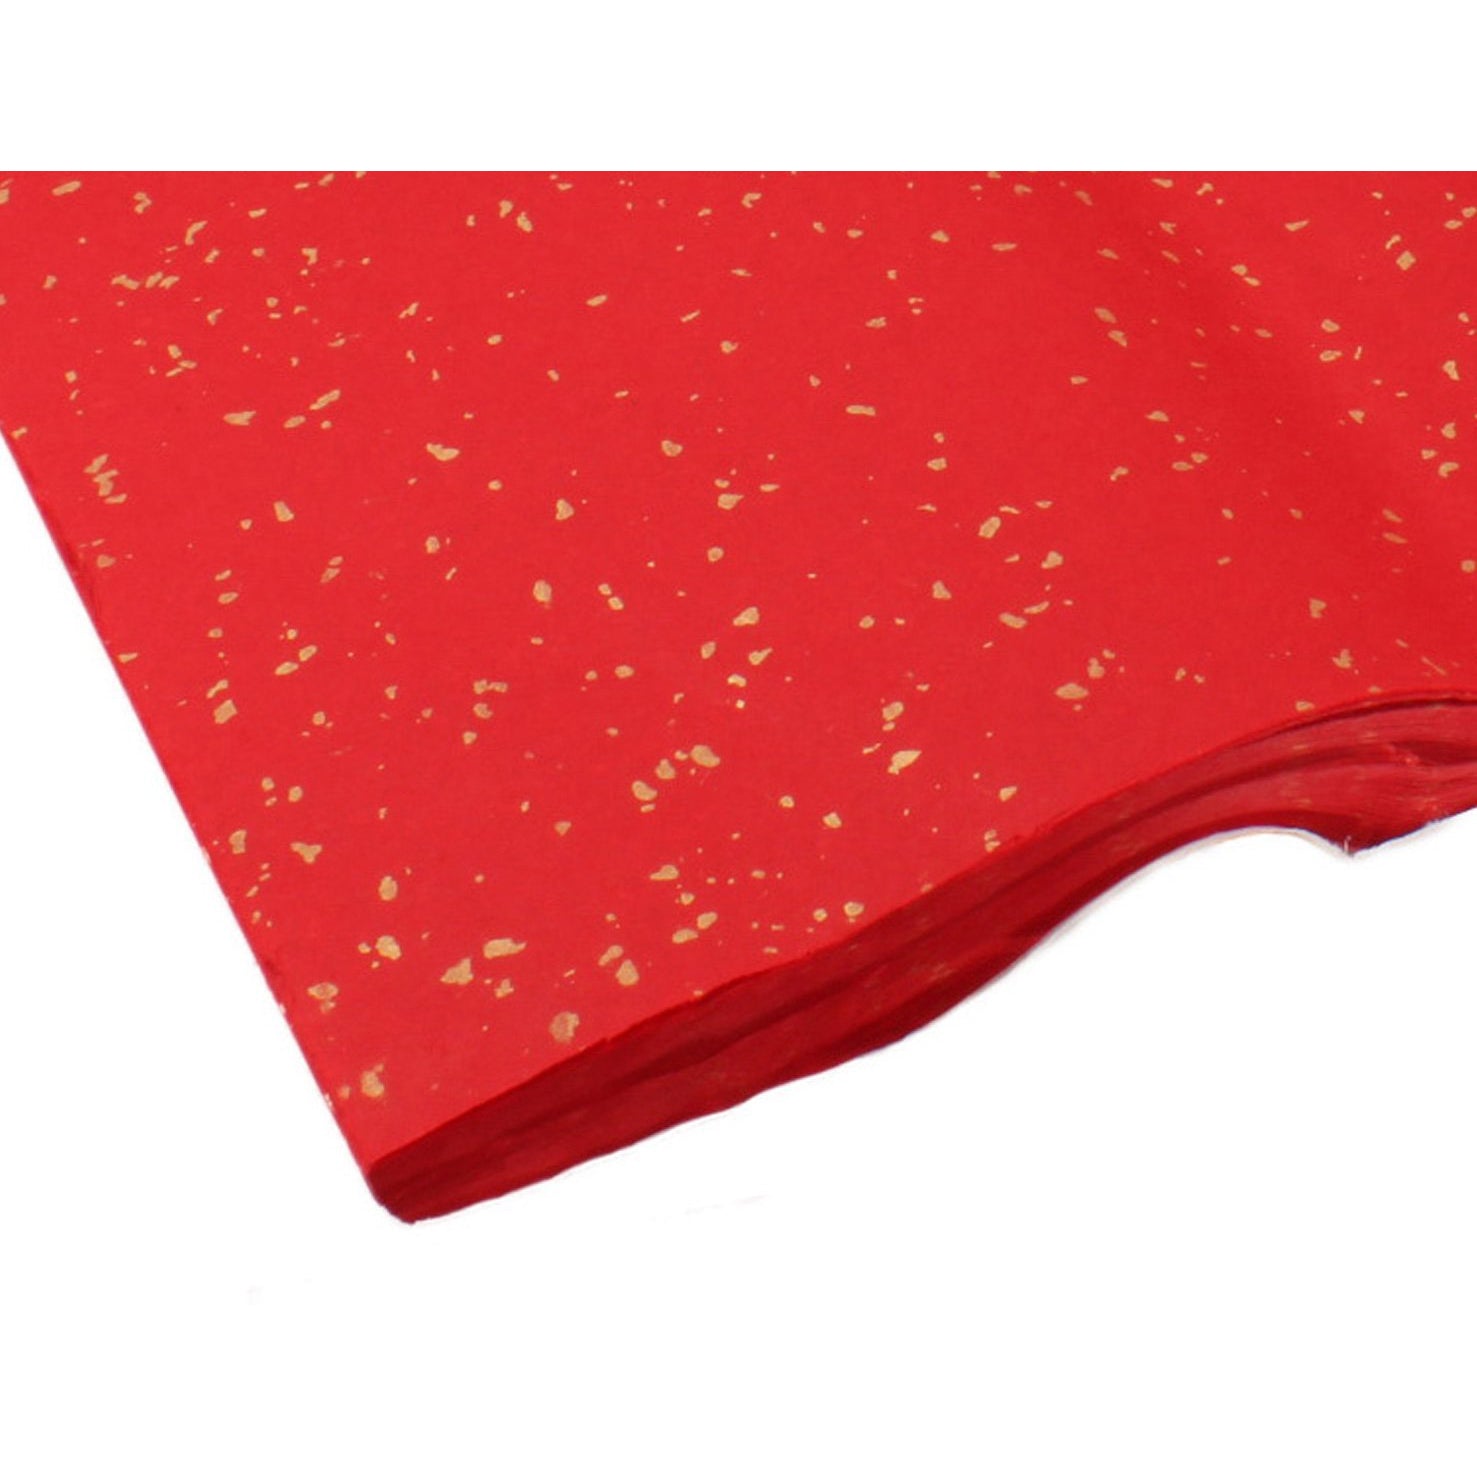 Golden Colored Snowfall Confetti Paper - Rasha Professional